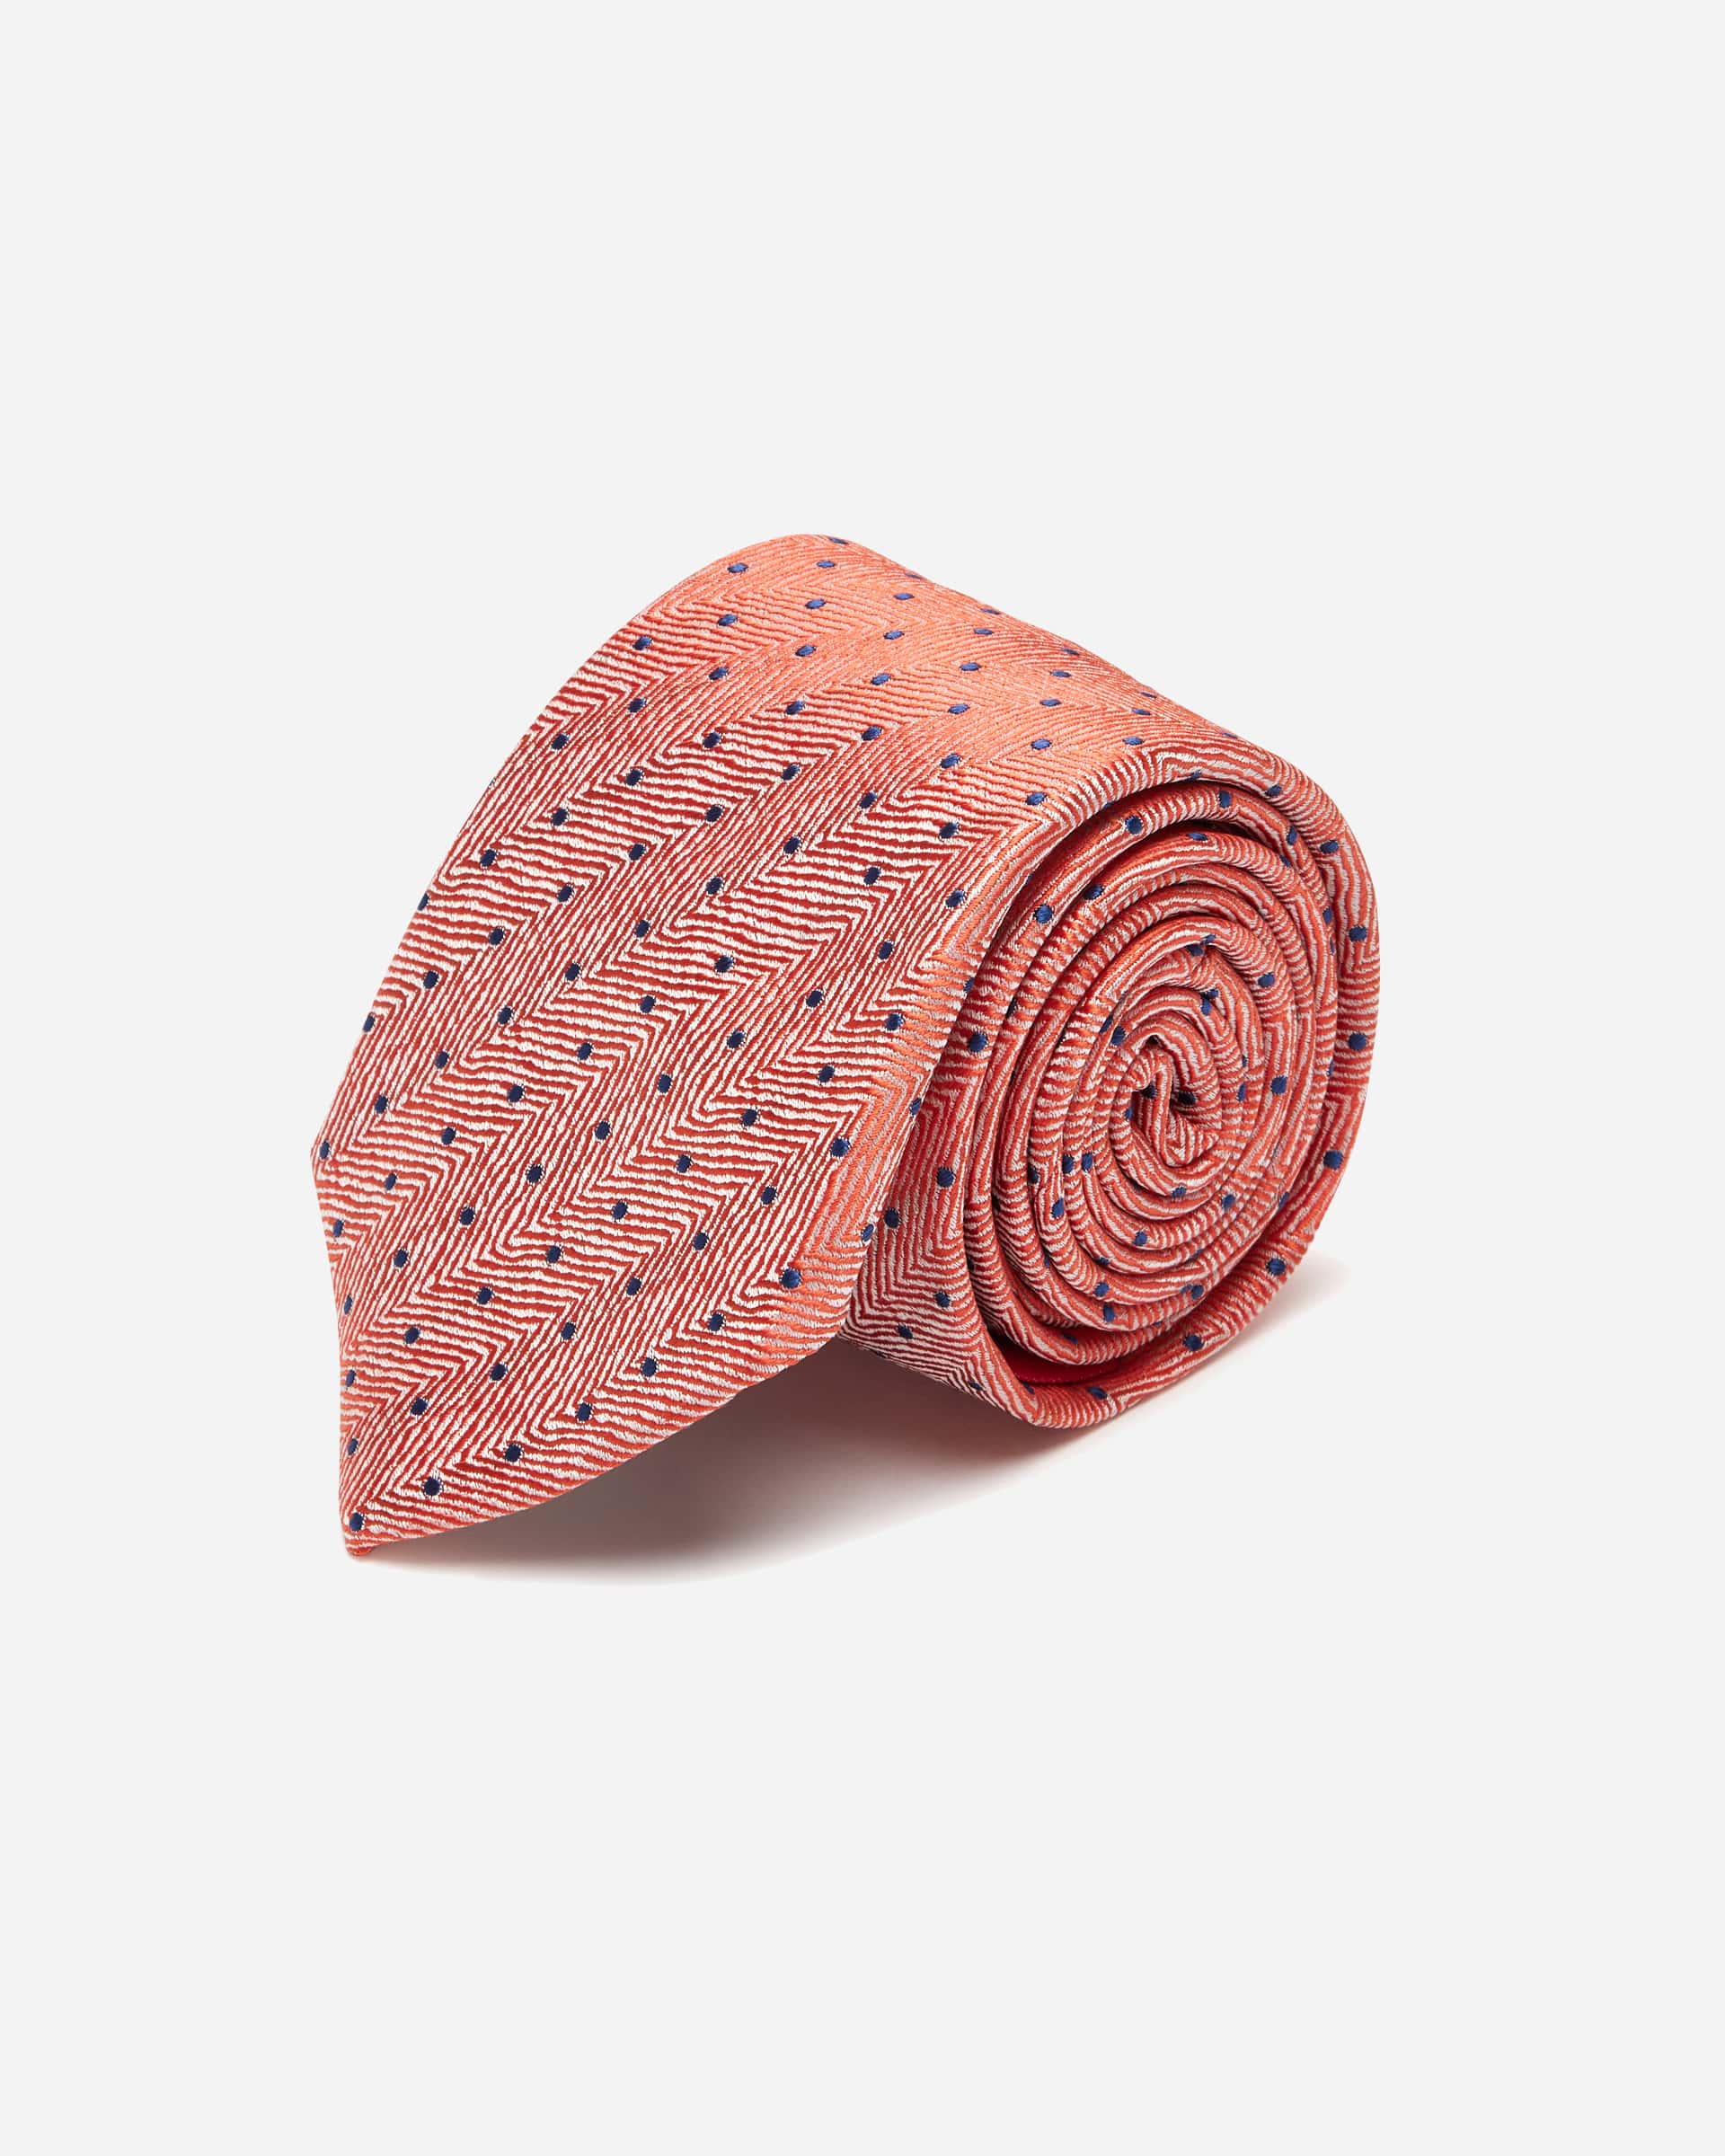 Salmon Herringbone with Dot Silk Tie - Men's Ties at Menzclub